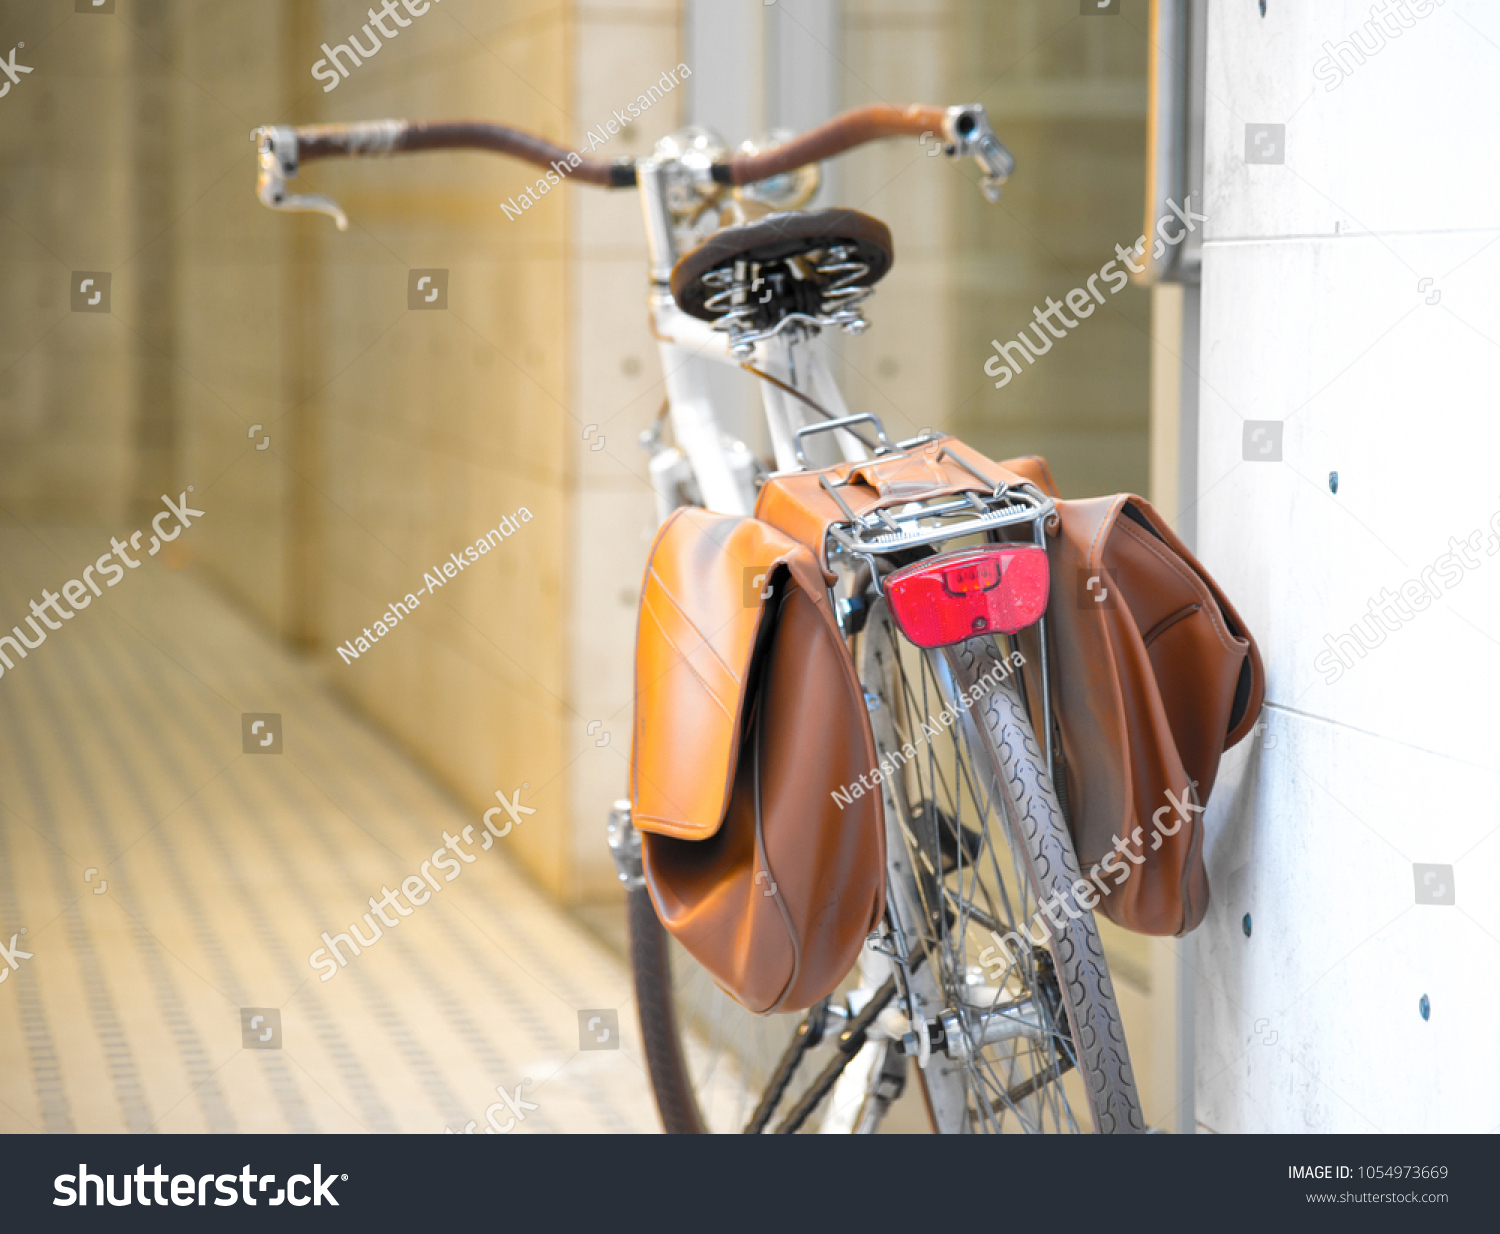 vintage bicycle panniers